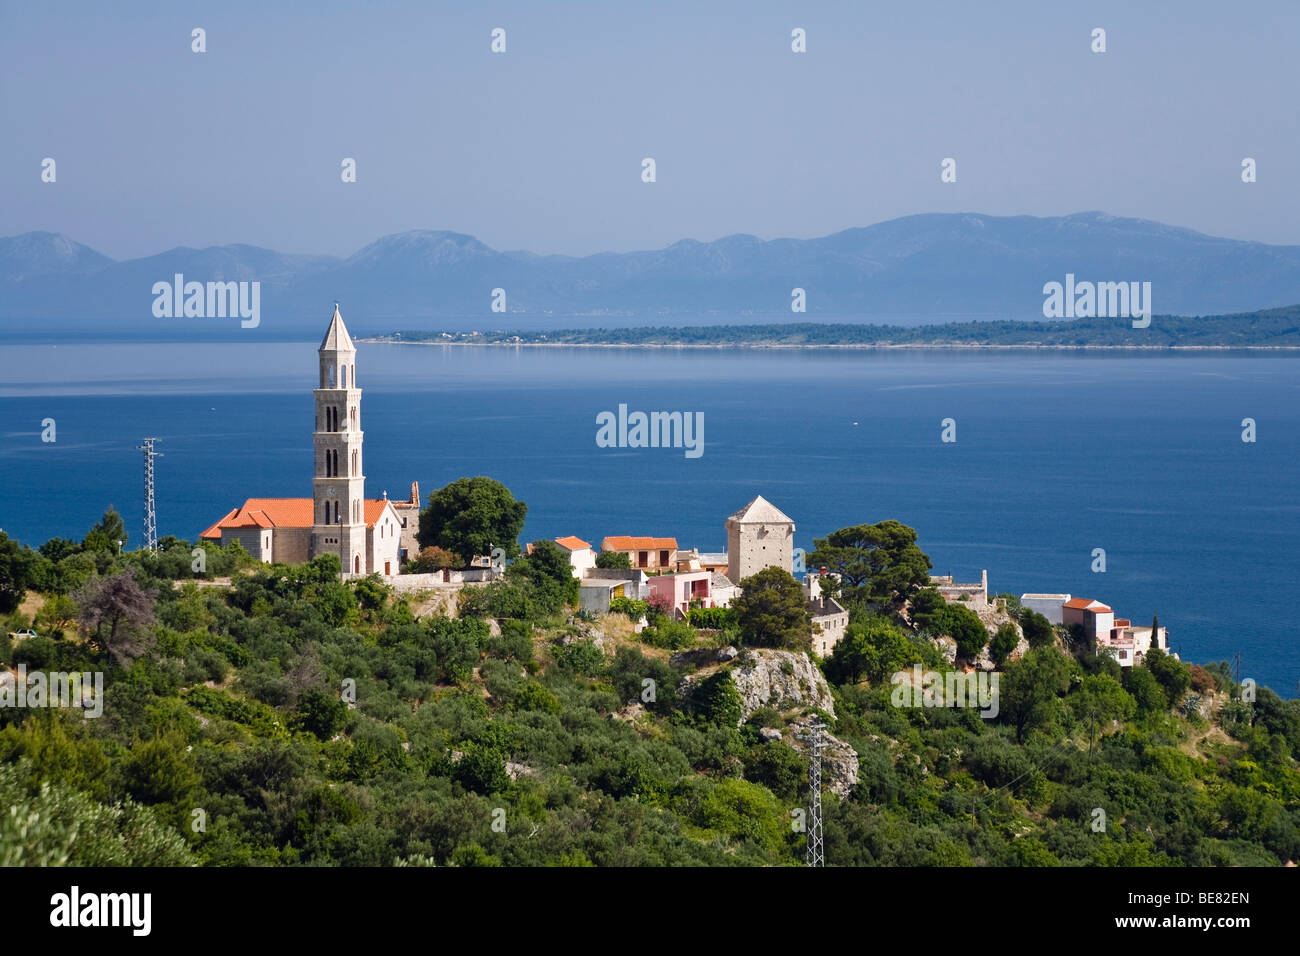 Blick auf die Häuser von Igrane und das Meer, Dalmatien, Kroatien, Europa Stockfoto